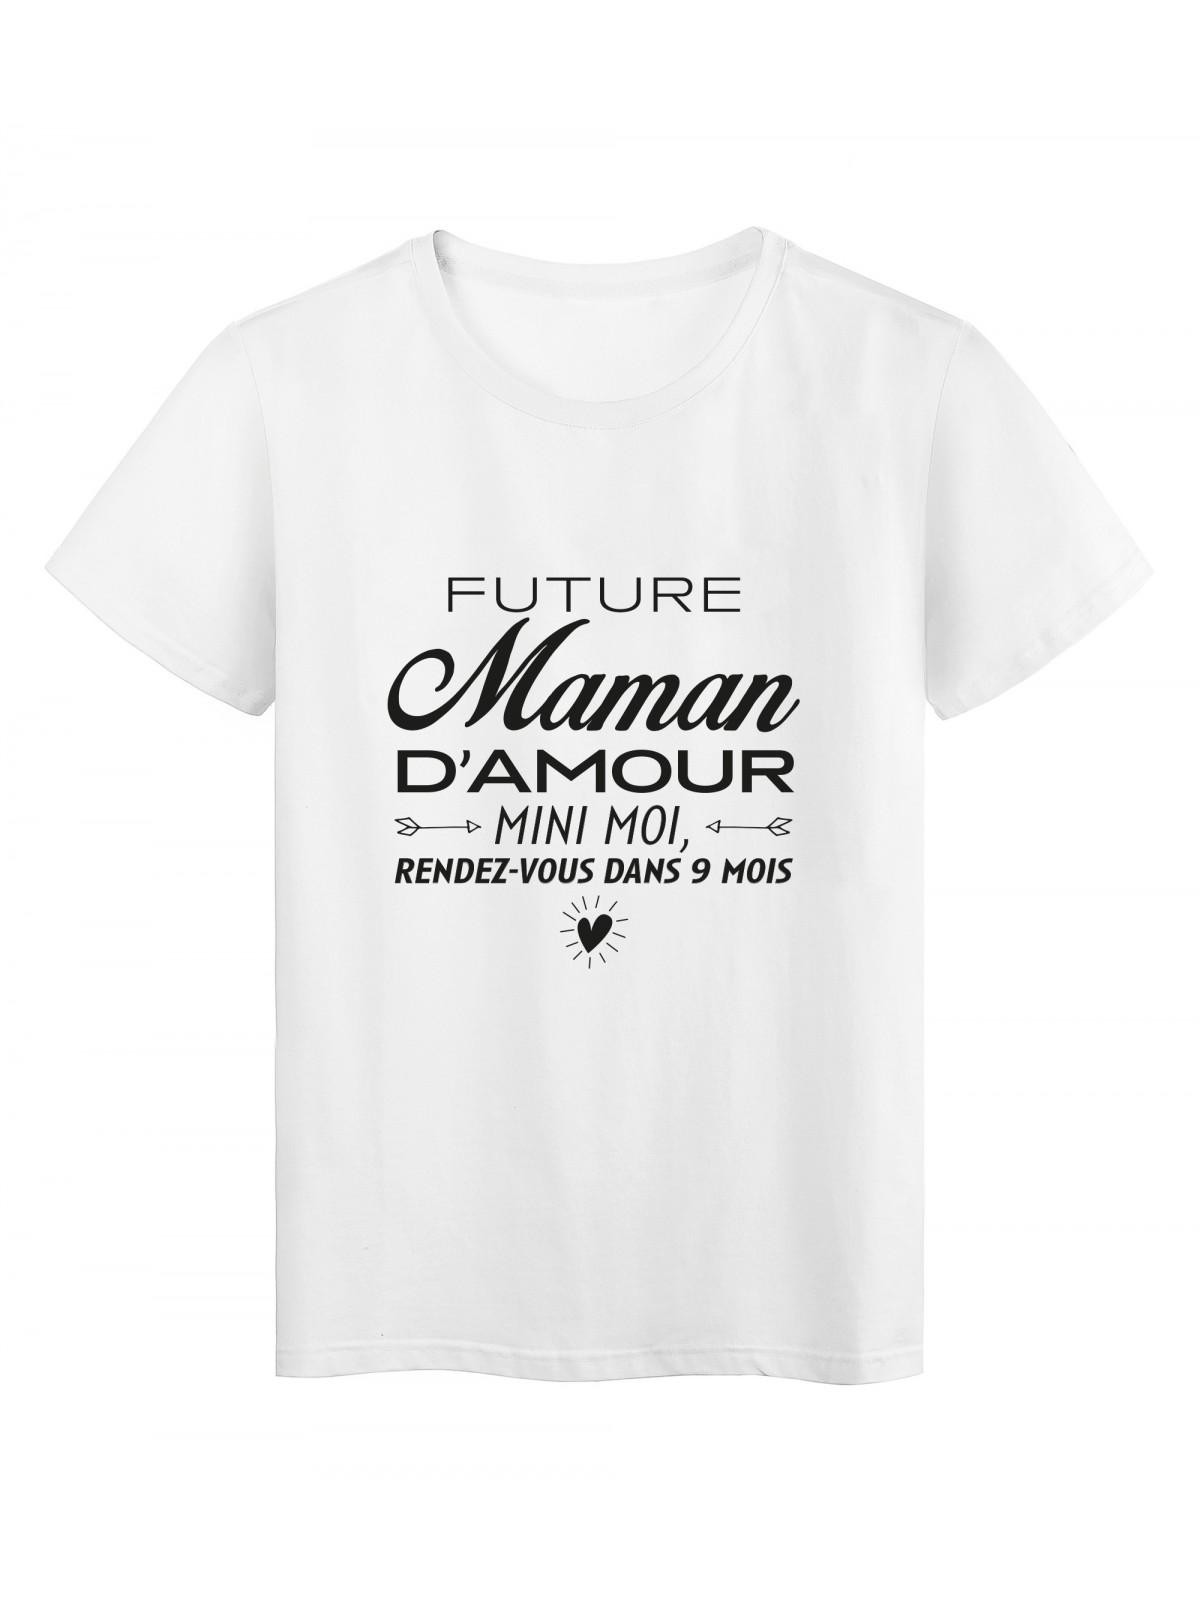 T-Shirt imprimÃ© citation humour future maman d'amour